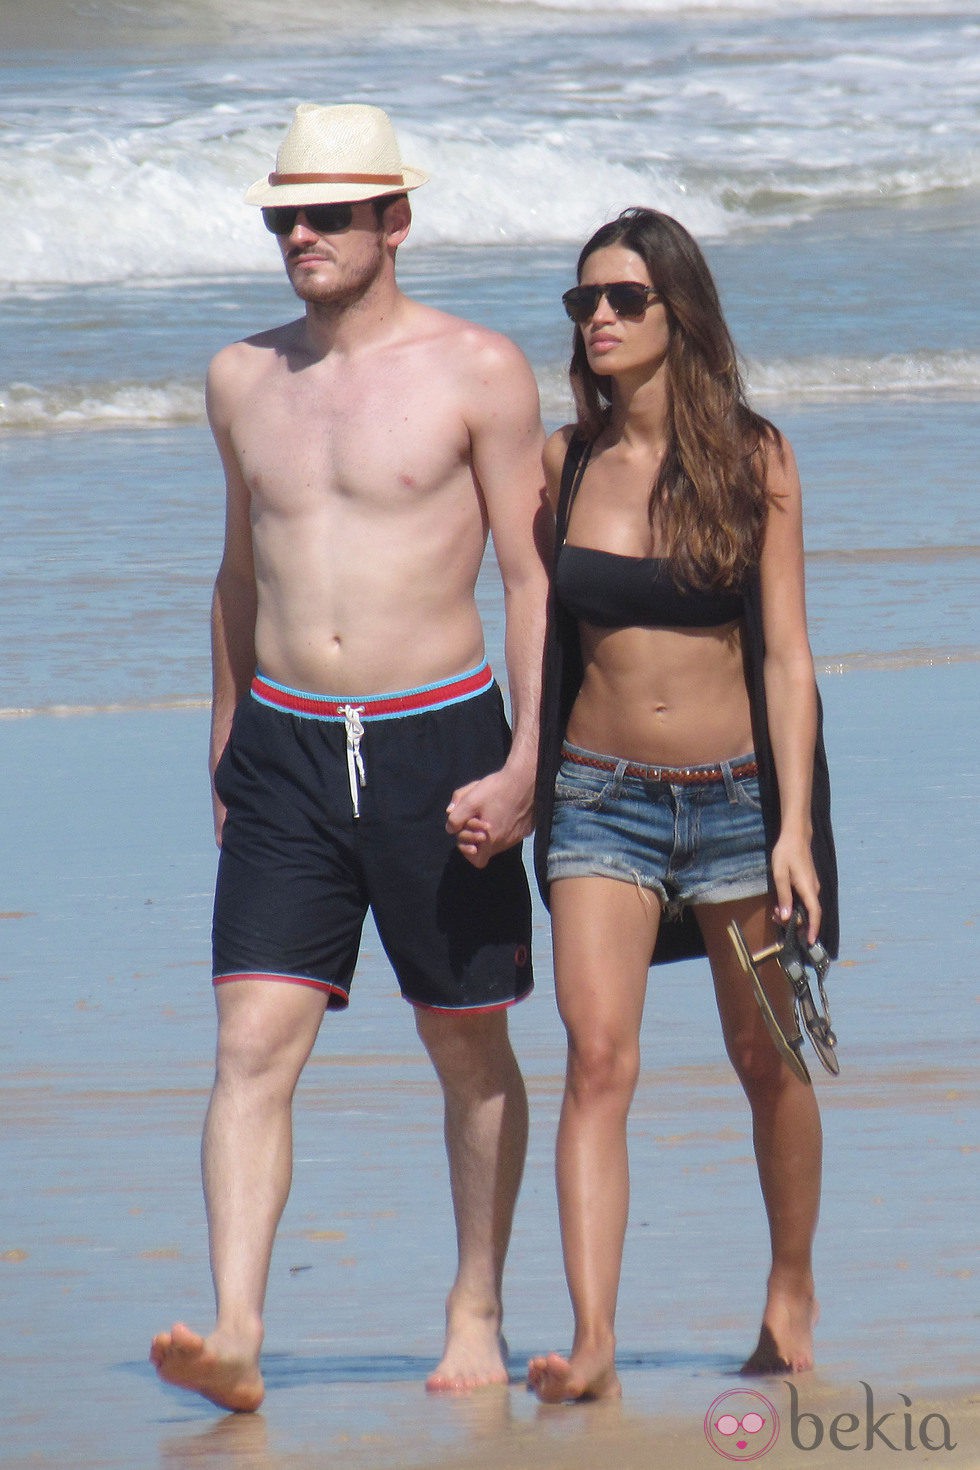 Sara Carbonero e Iker Casillas en la playa